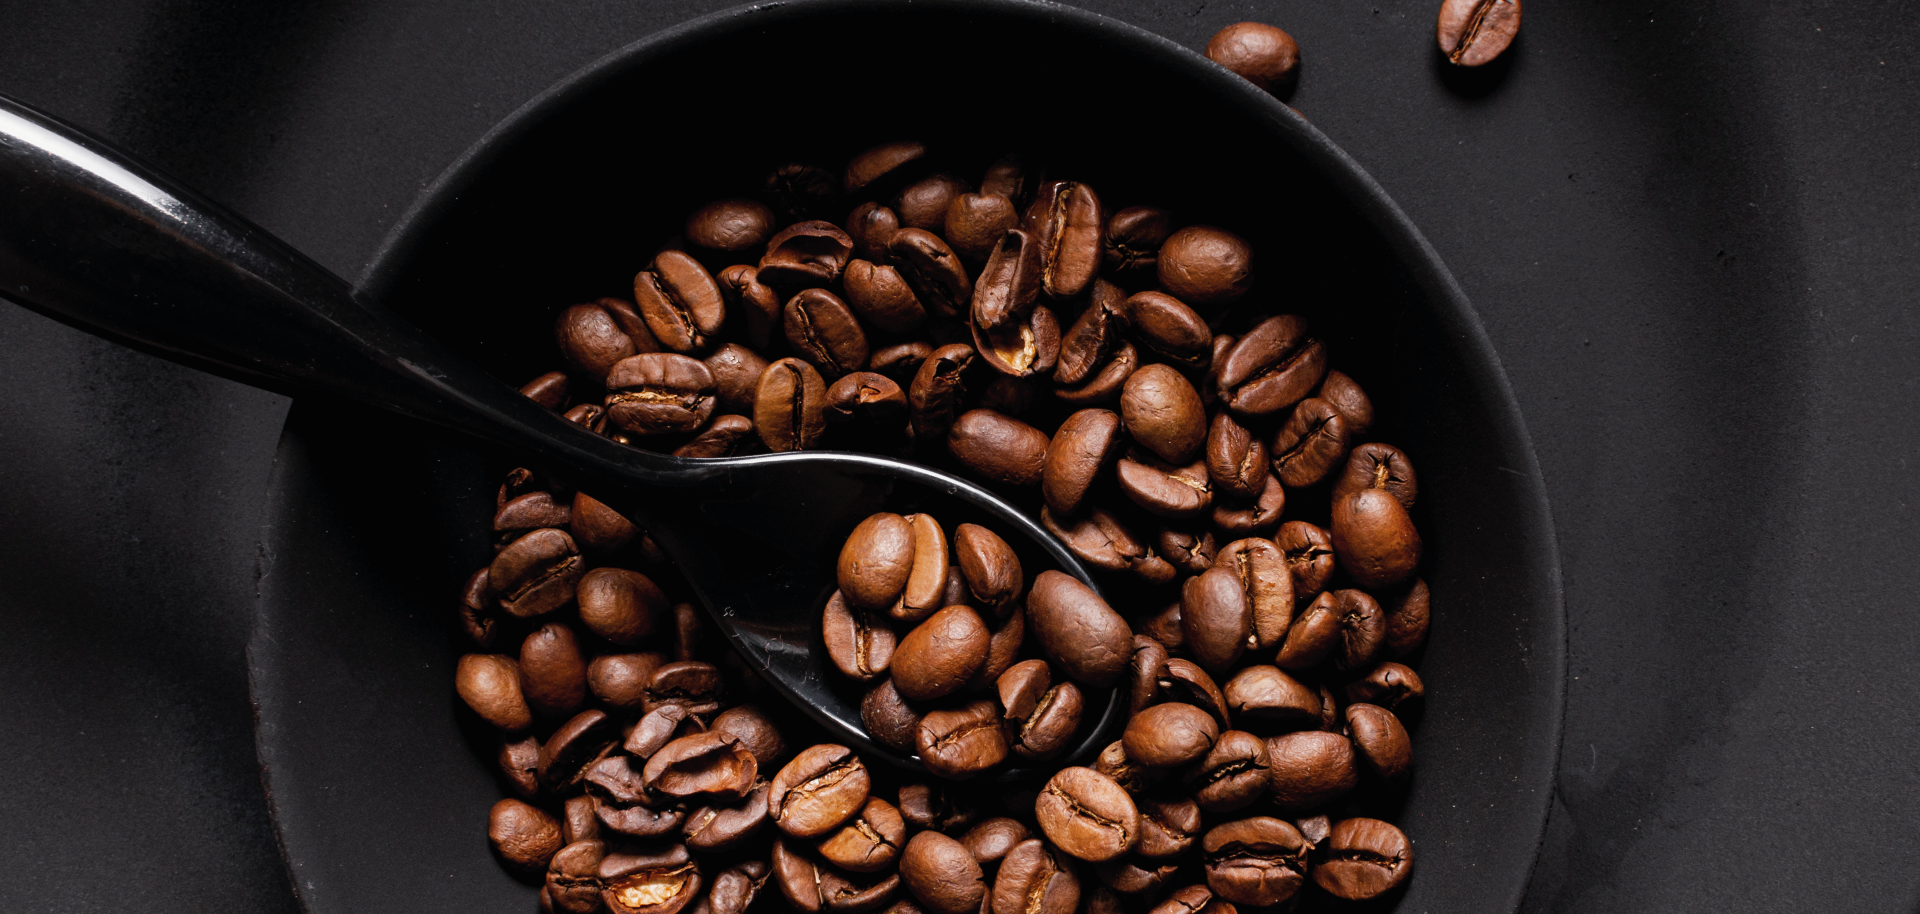 LU.LI CAFFE' | Leader nel settore delle Capsule & Macchine da Caffè.   Oltre 5000 clienti,  tra famiglie e aziende, usano già i nostri prodotti e servizi.